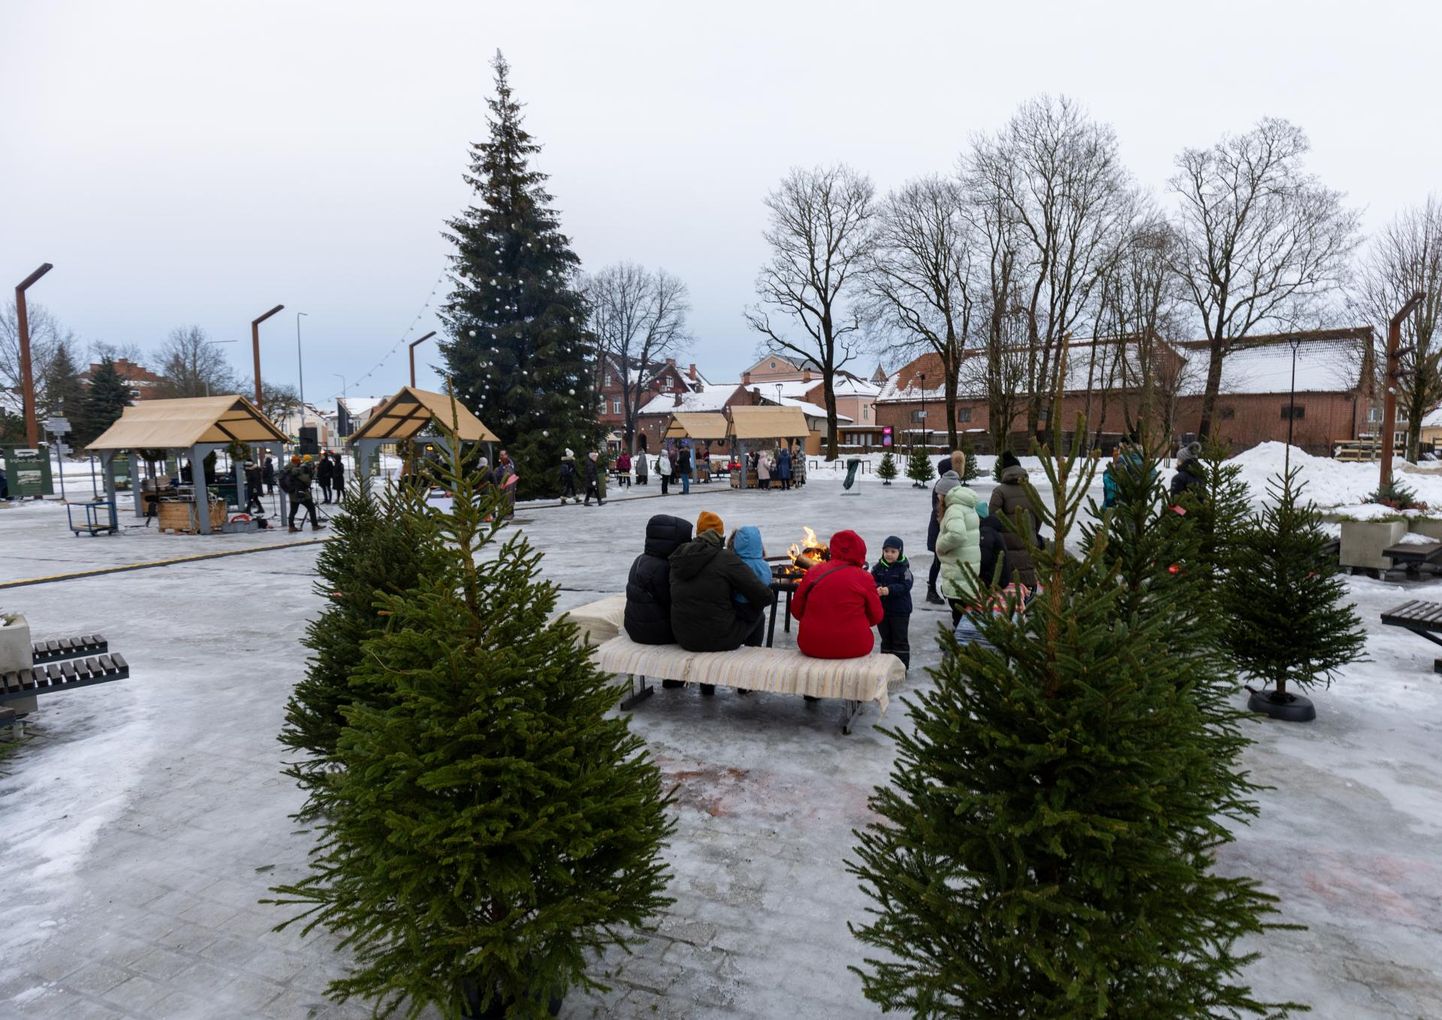 Nüüd, mil jõulupühad peetud, on aeg suunata pilk aastavahetusele.
Viljandi linnavalitsus ootab aastapreemia saajate kohta ettepanekuid 31. detsembrini.